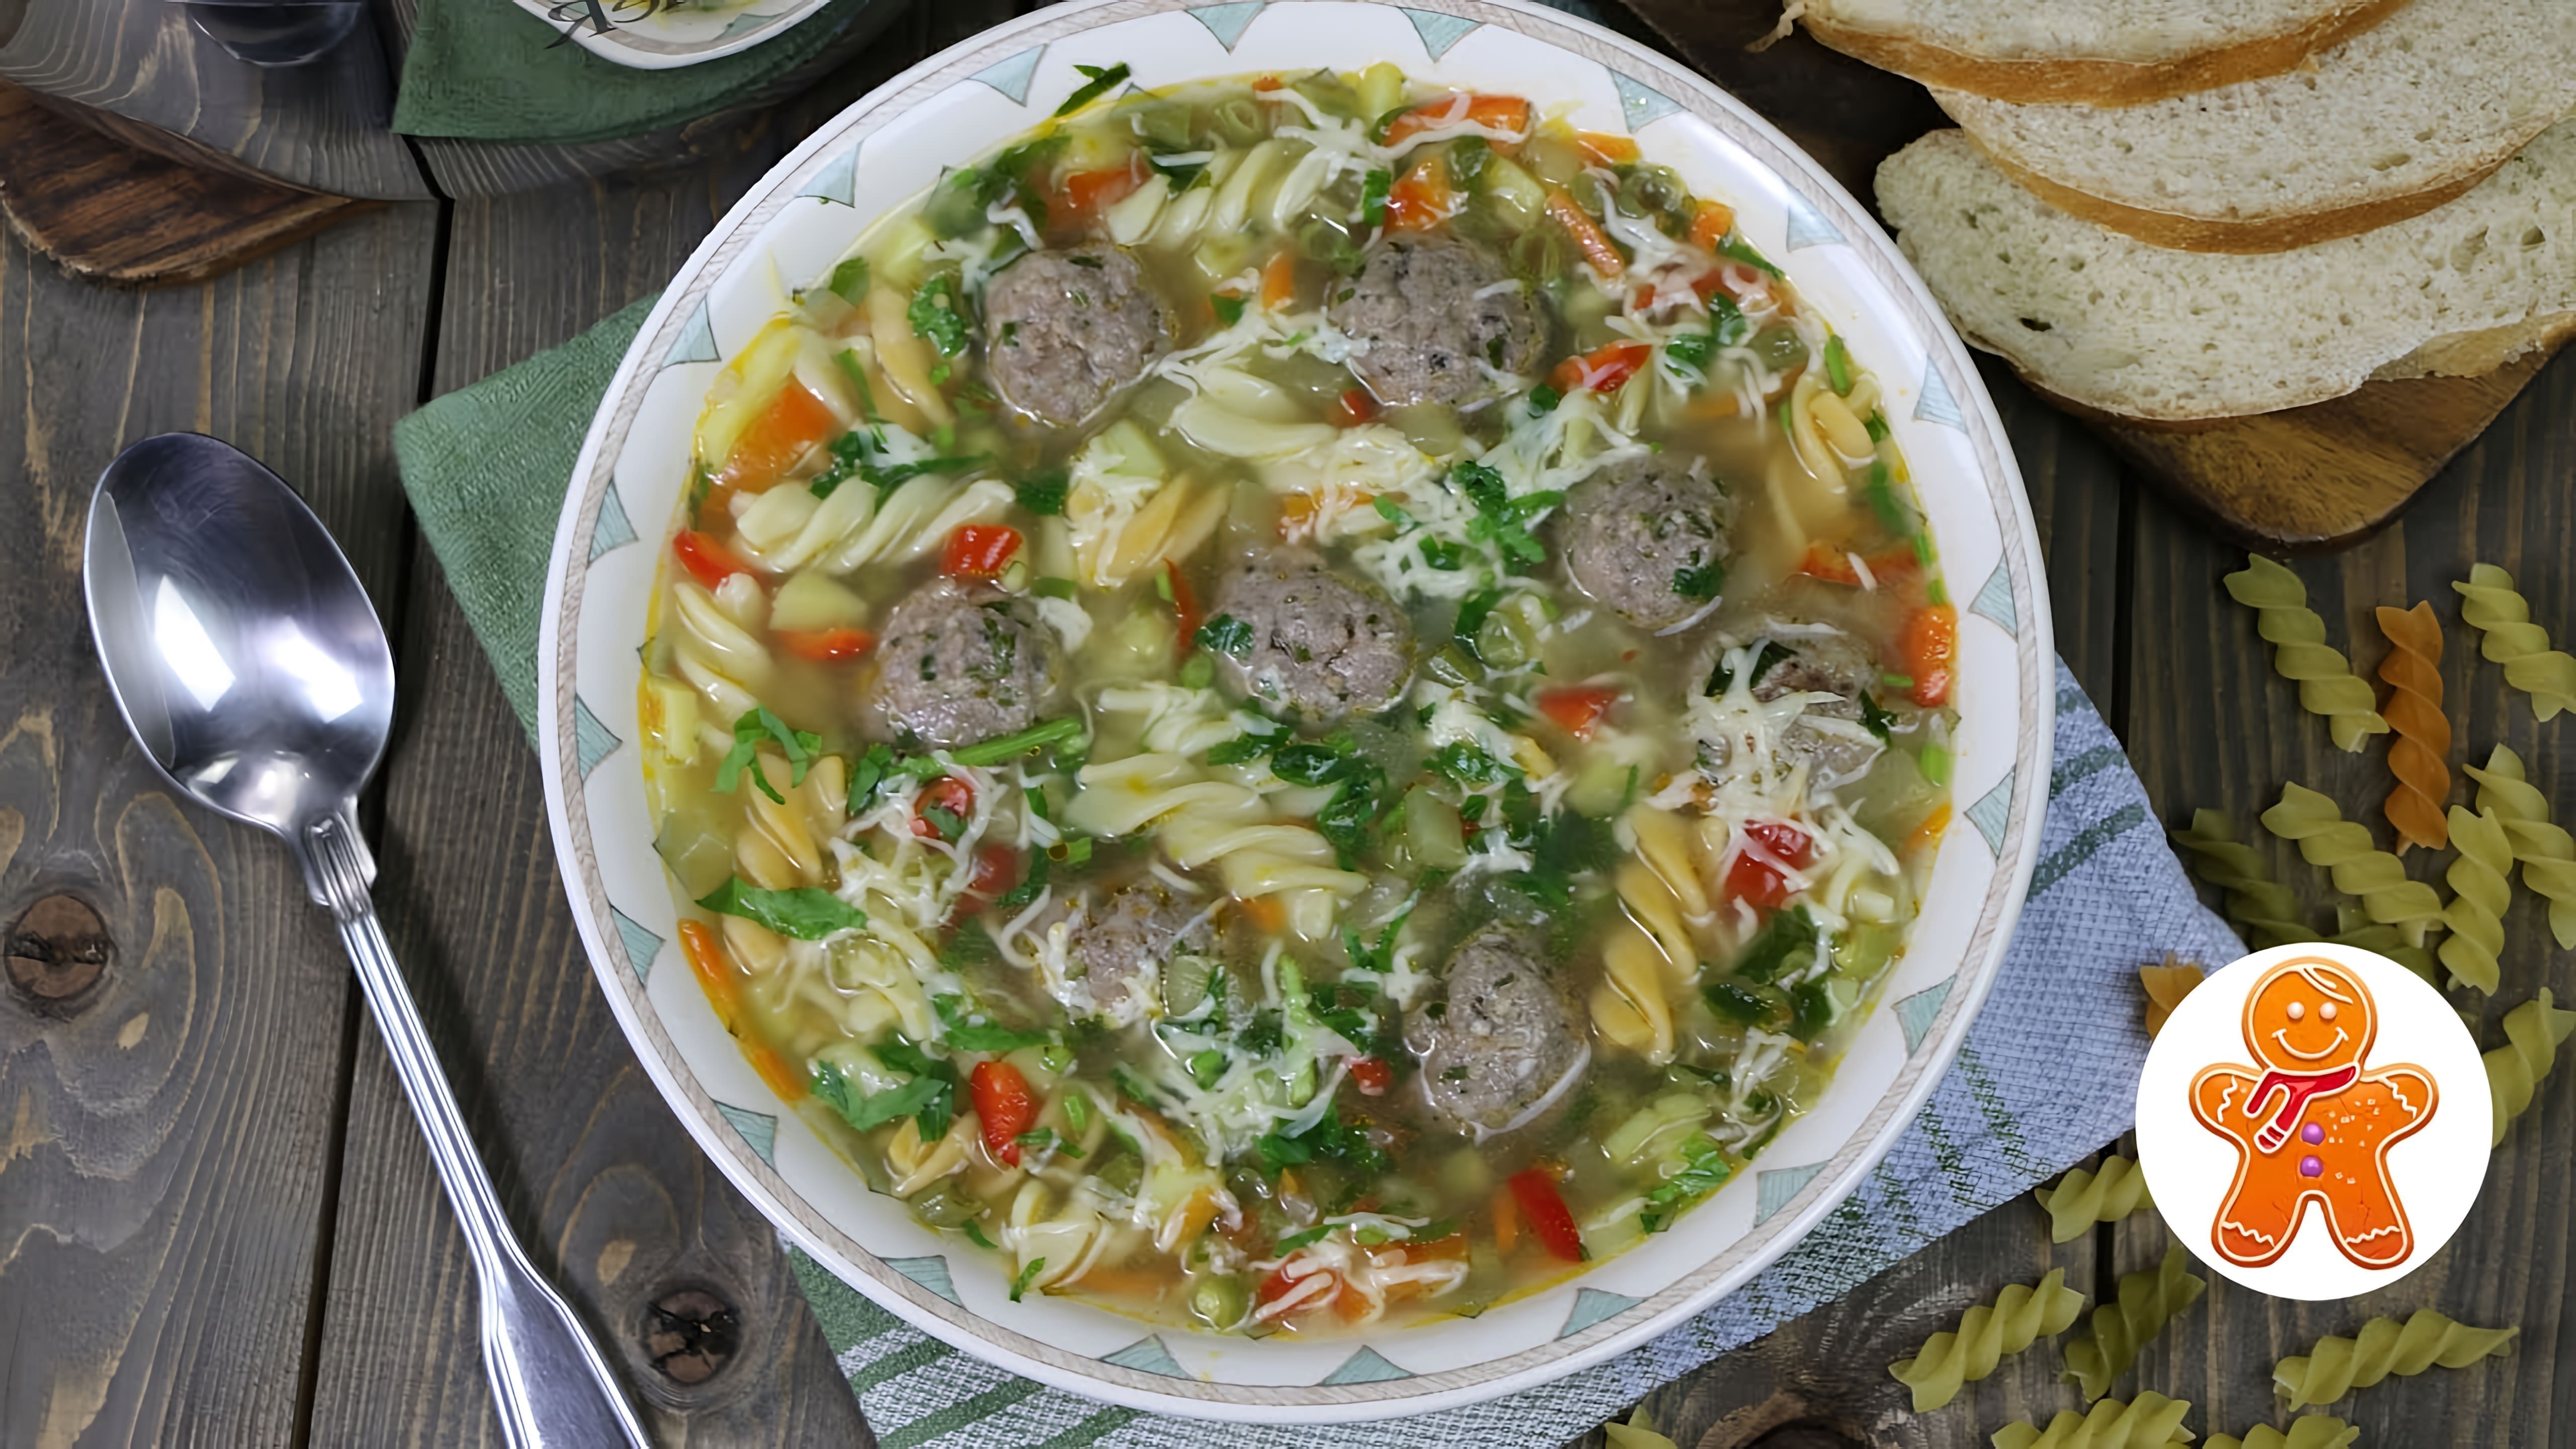 В этом видео демонстрируется процесс приготовления супа с фрикадельками по-итальянски